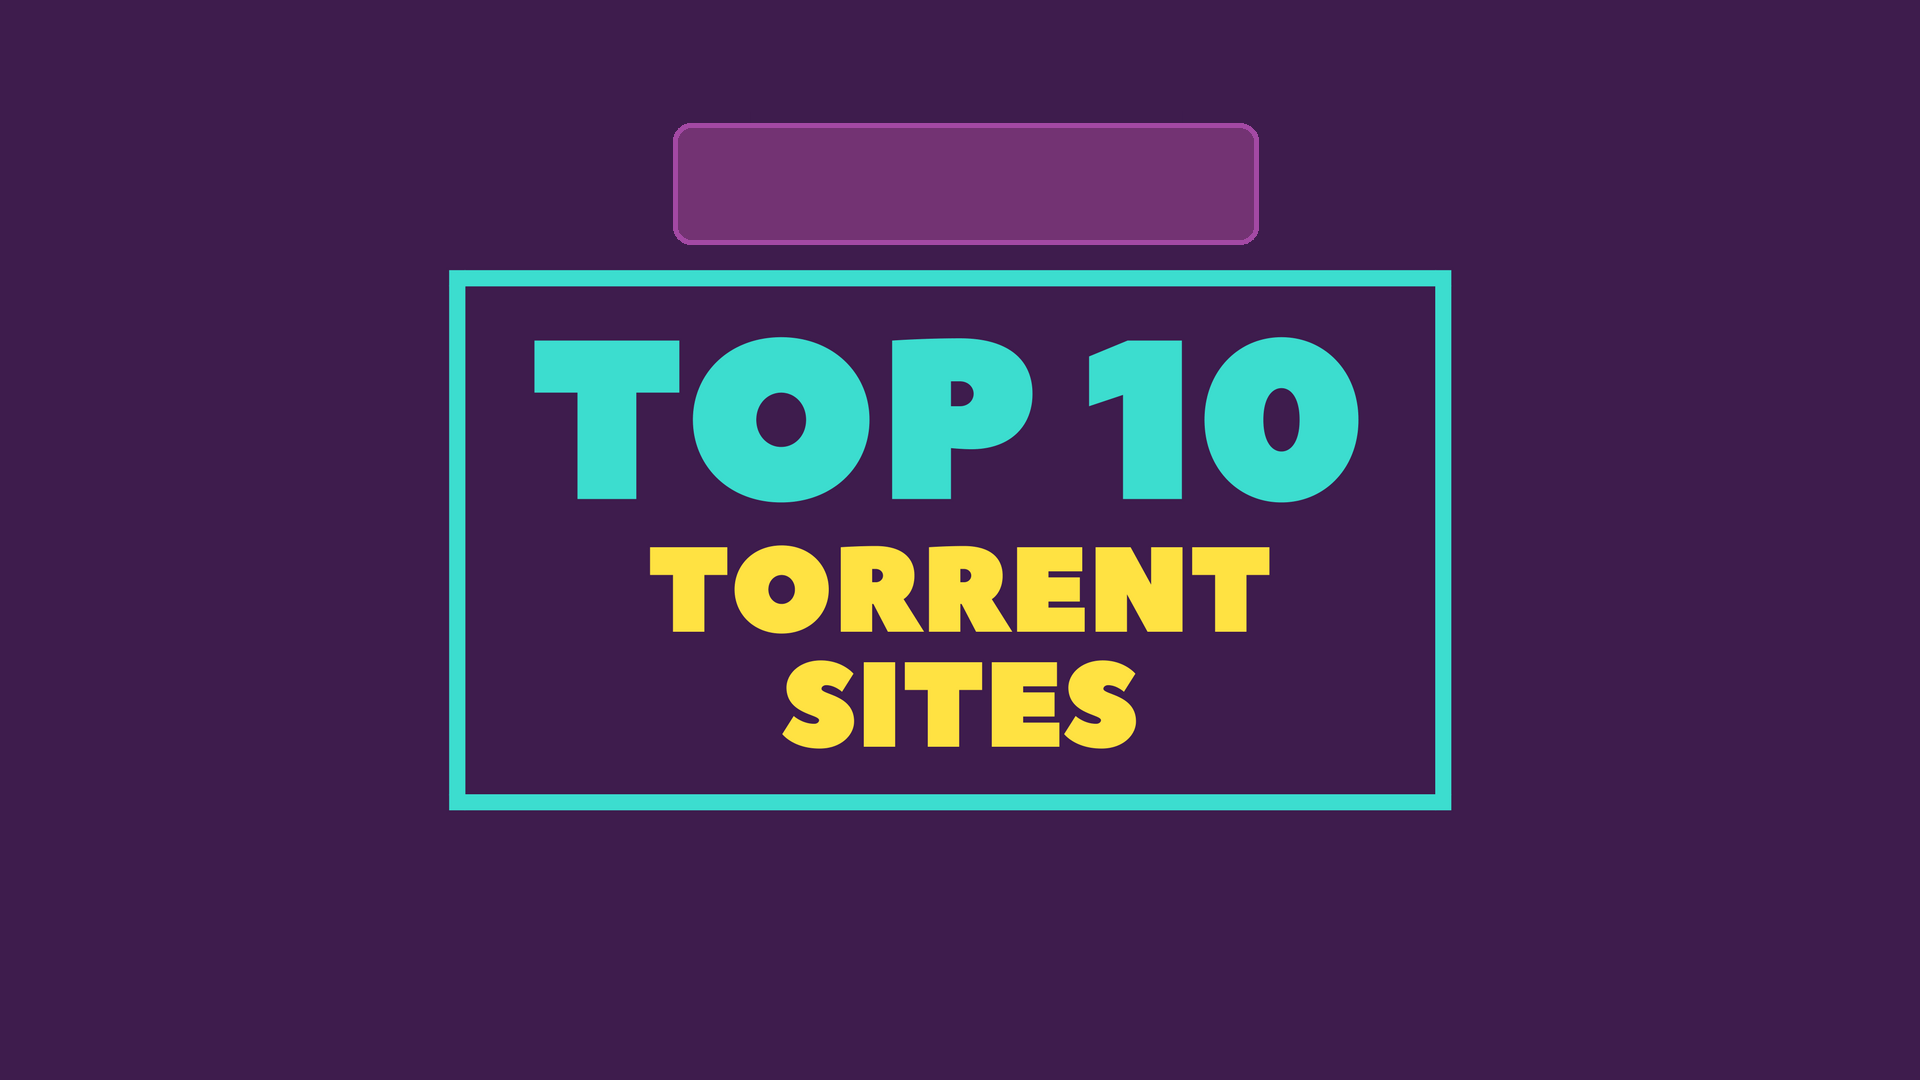 مواقع التورنت العربي torrent sites لتحميل الملفات على الكمبيوتر